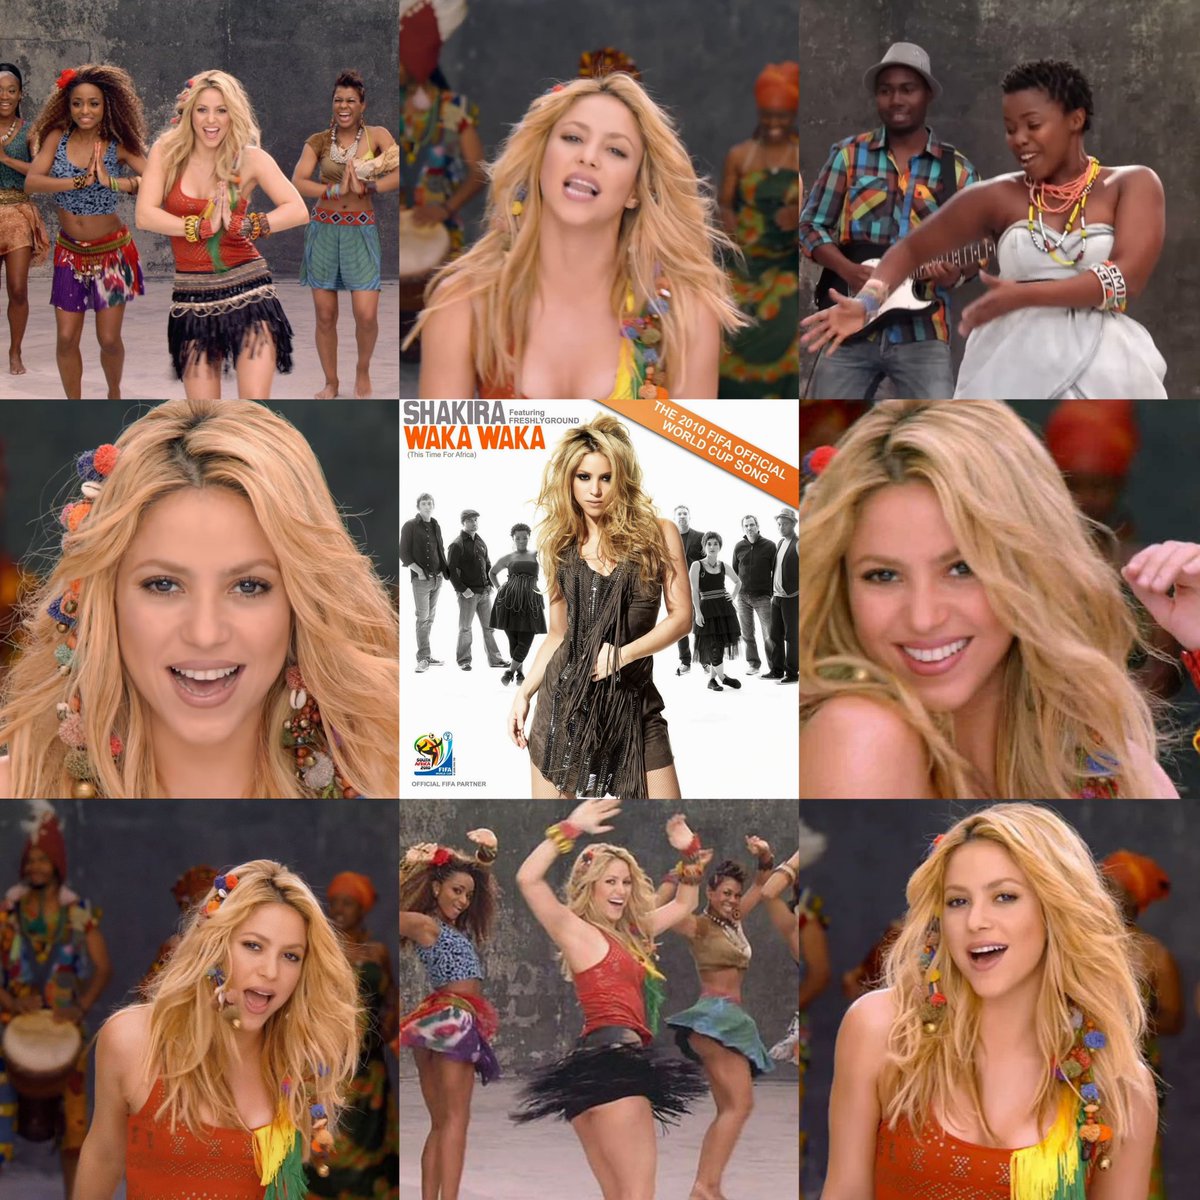 🔙 Hace 14 años, Shakira lanzó 'Waka Waka'.

— 'Mejor Himno Oficial de la FIFA de la historia', Billboard
— #1 en España por 17 semanas
— #1 en 16 países
— Canción más vendida en Europa en 2010
— 25 millones de ventas mundiales
— 6 mil millones de streams globales